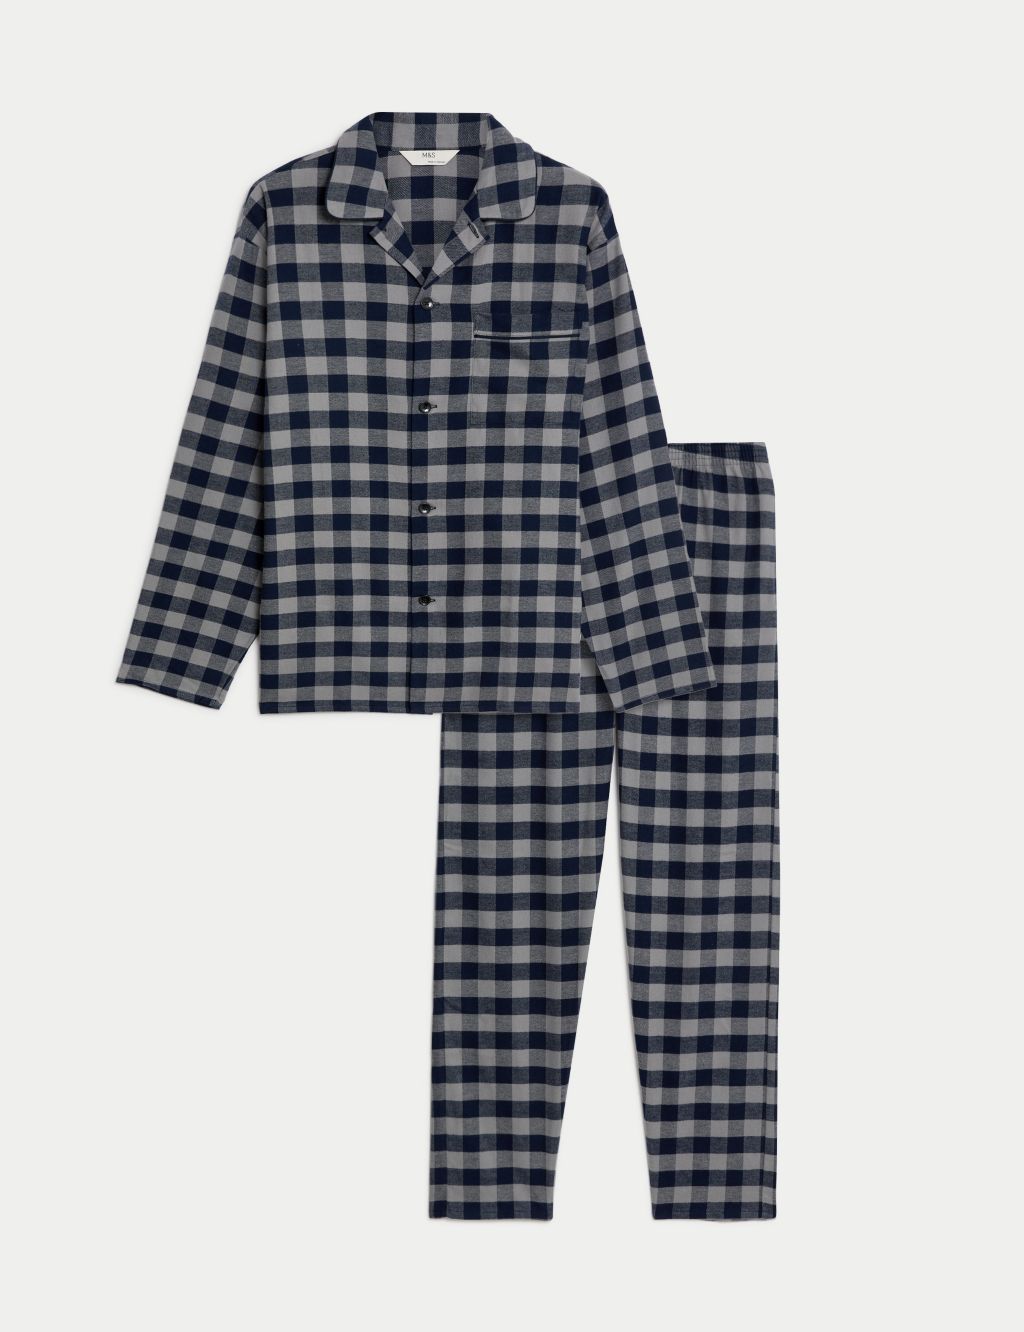 Brushed Cotton Checked Pyjama Set image 2